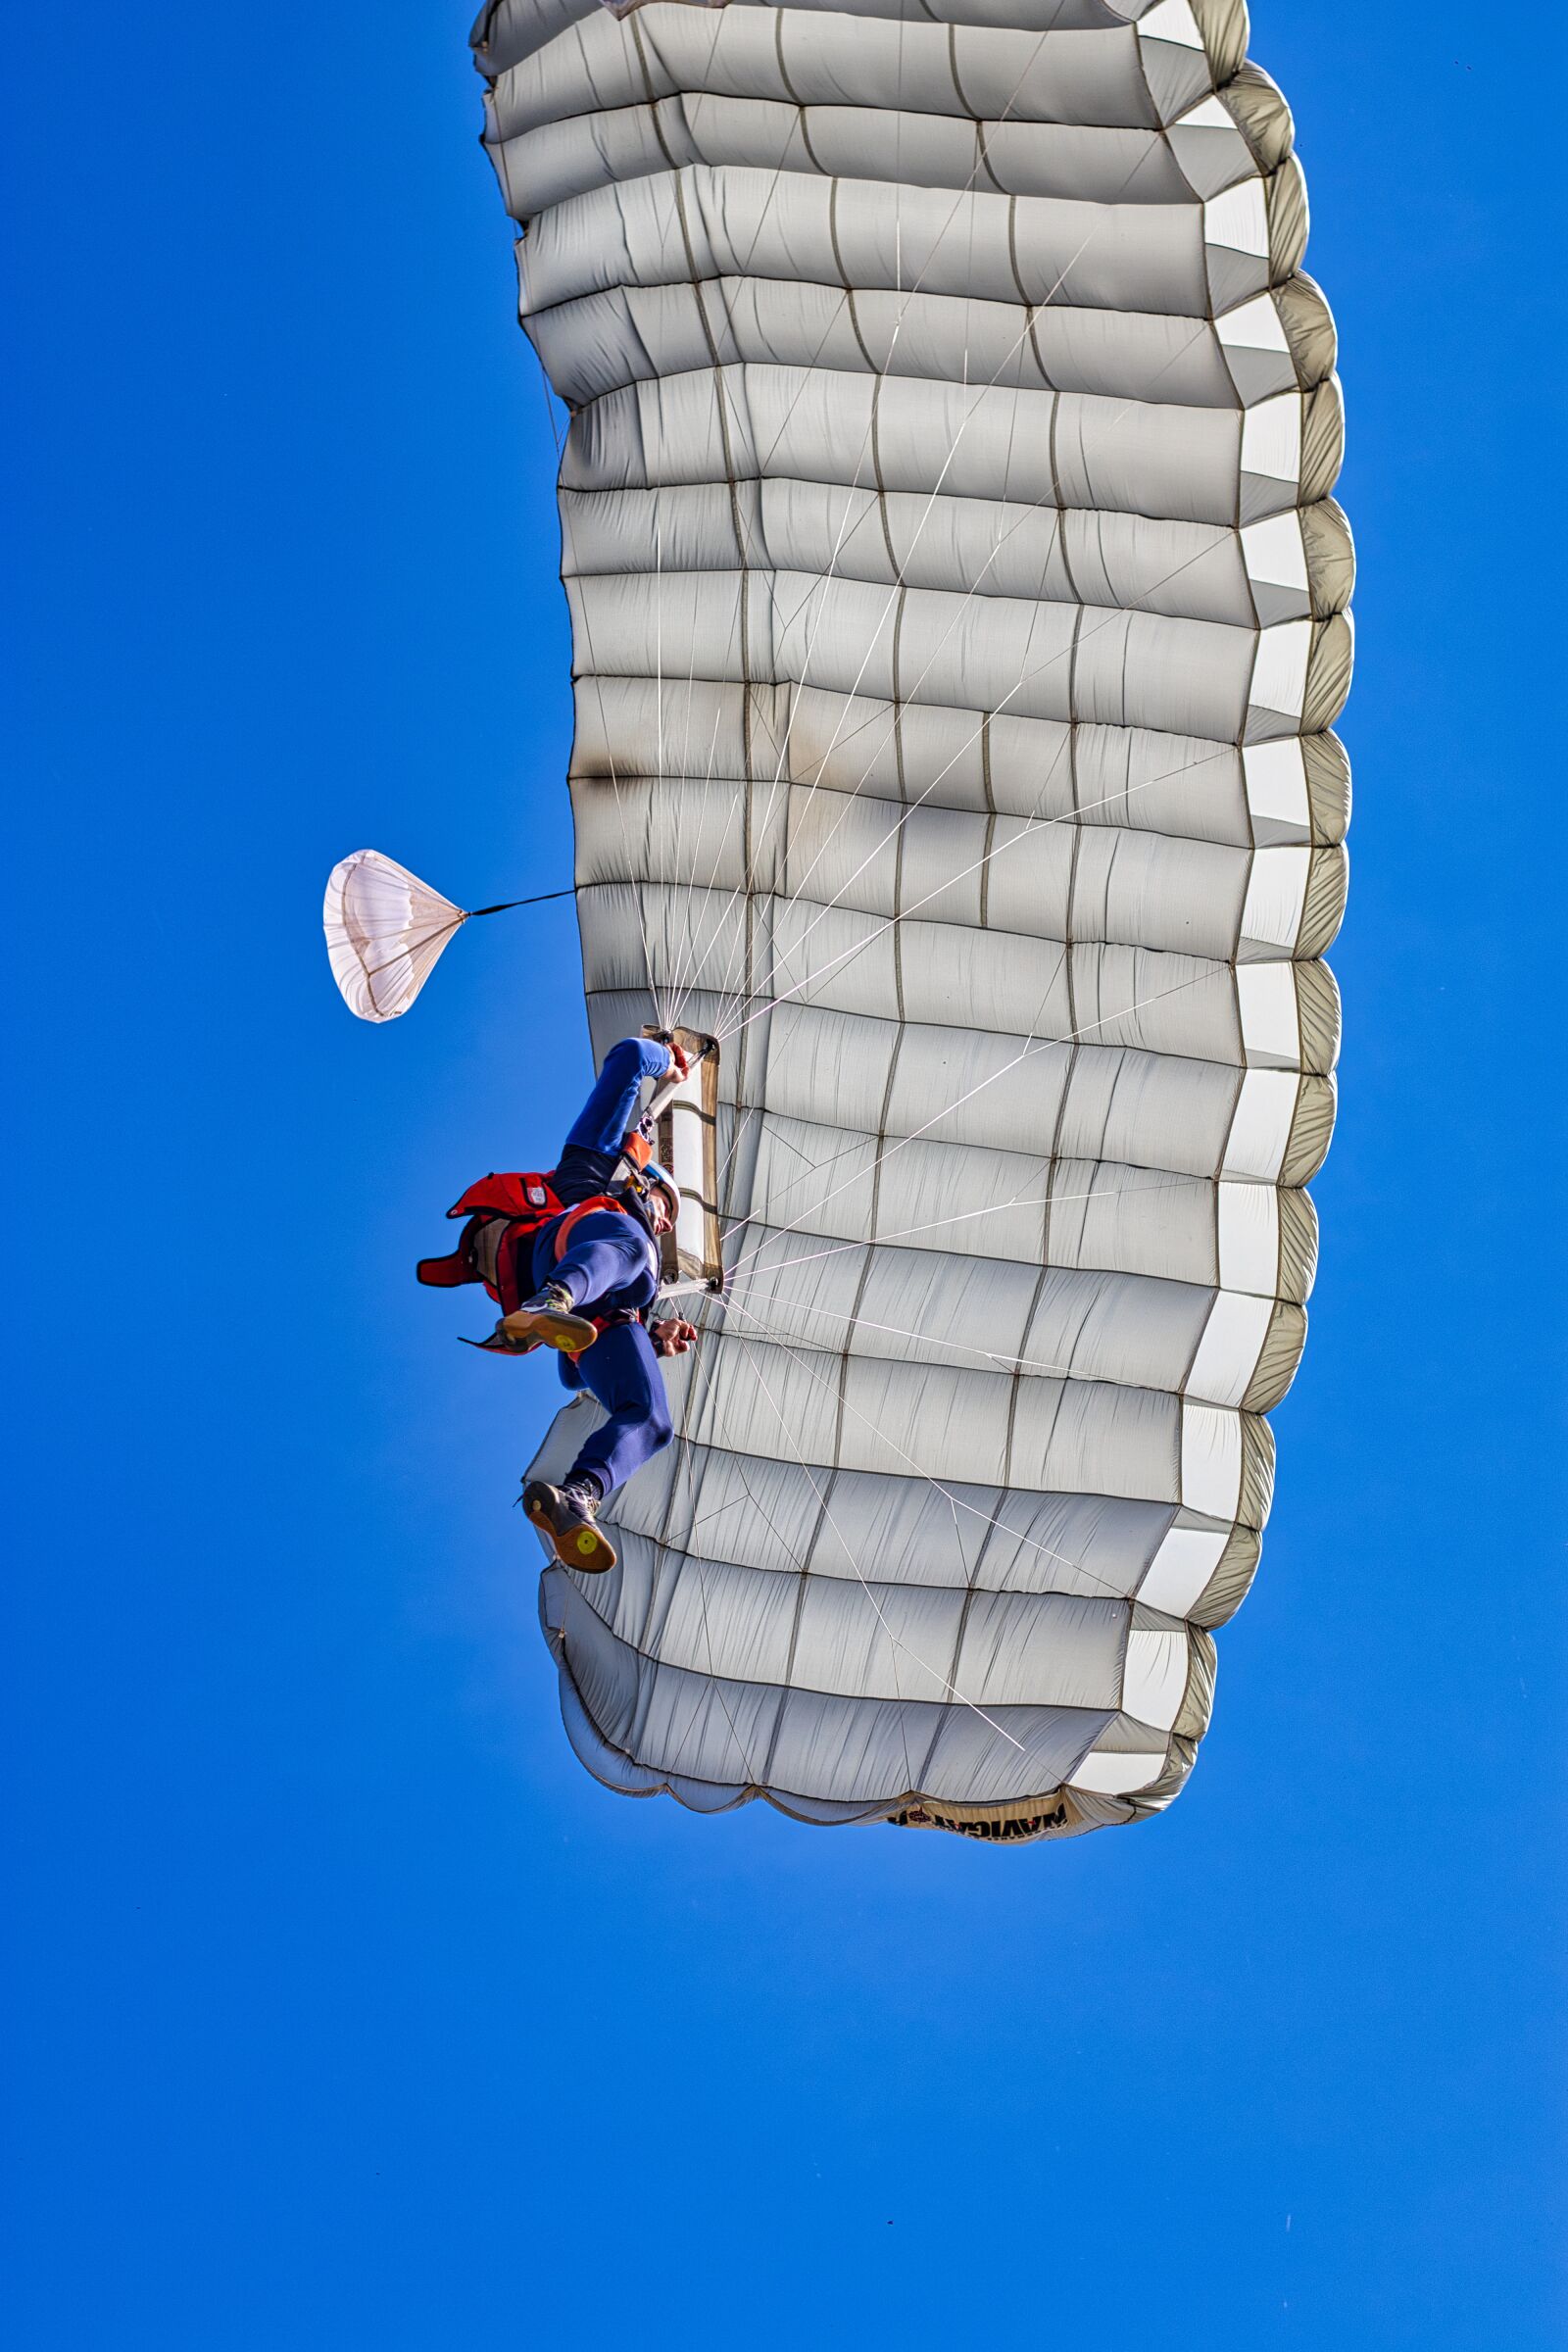 Canon EOS M50 (EOS Kiss M) sample photo. Parachute, fall, jump photography